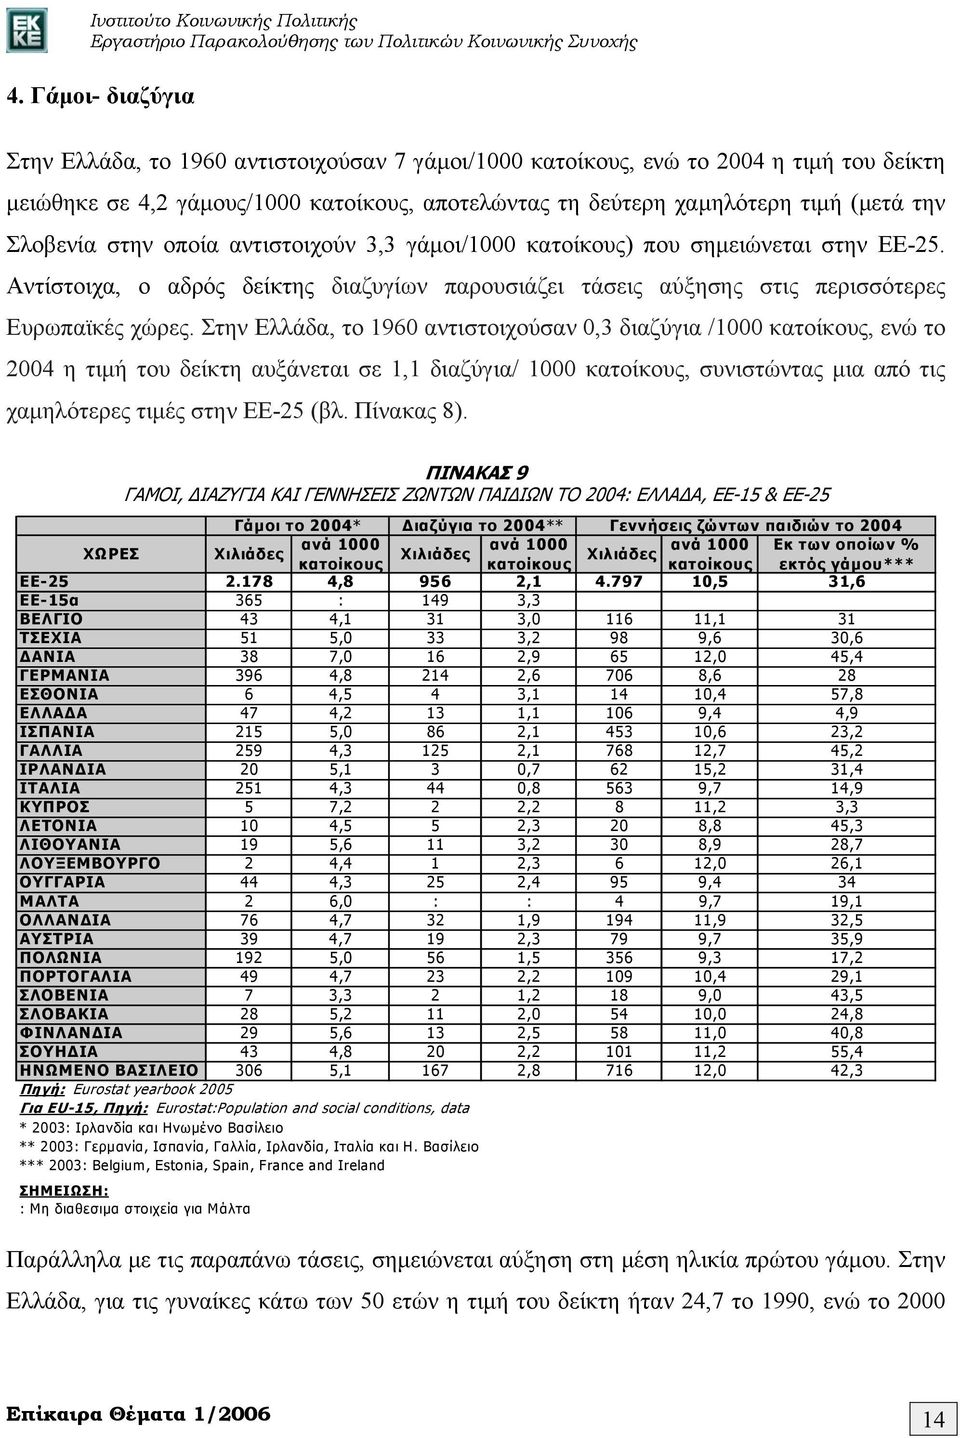 Στην Ελλάδα, το 1960 αντιστοιχούσαν 0,3 διαζύγια /1000 κατοίκους, ενώ το 2004 η τιμή του δείκτη αυξάνεται σε 1,1 διαζύγια/ 1000 κατοίκους, συνιστώντας μια από τις χαμηλότερες τιμές στην ΕΕ-25 (βλ.